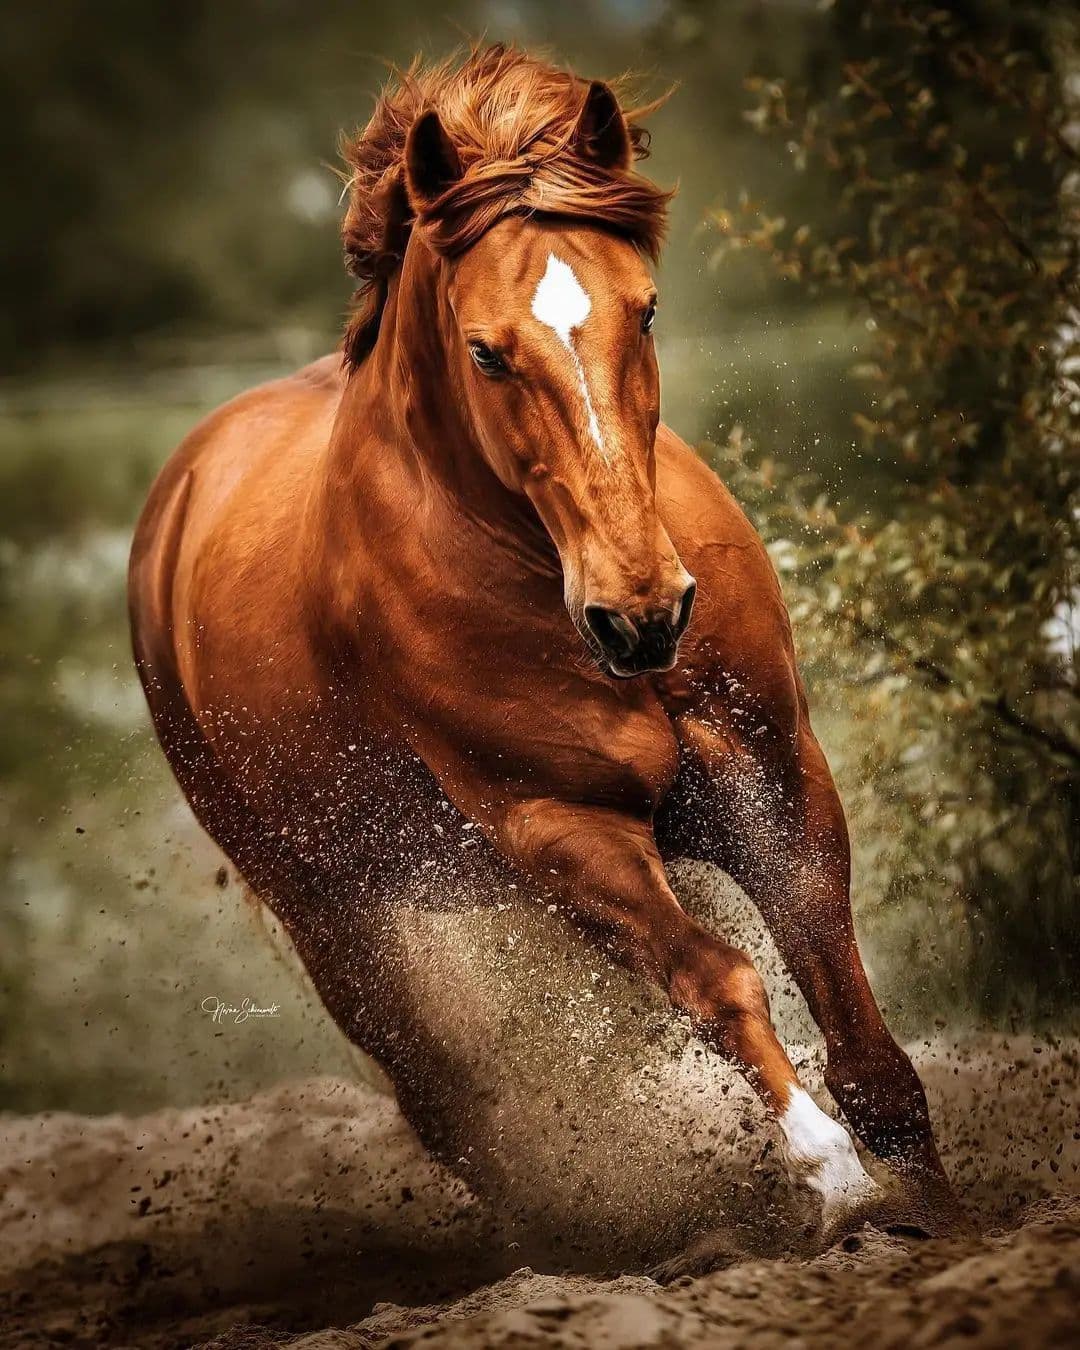 Horse Lover Club på Twitter: Good luck #horses #horseriding Vem #horseinstagram #orsepower #horselove #horselover #ilovemyhorse #horselife #horseshow #horserider #horseracing #horseofinstagram #horselovers #horsebackriding #horsestagram #horseoftheday